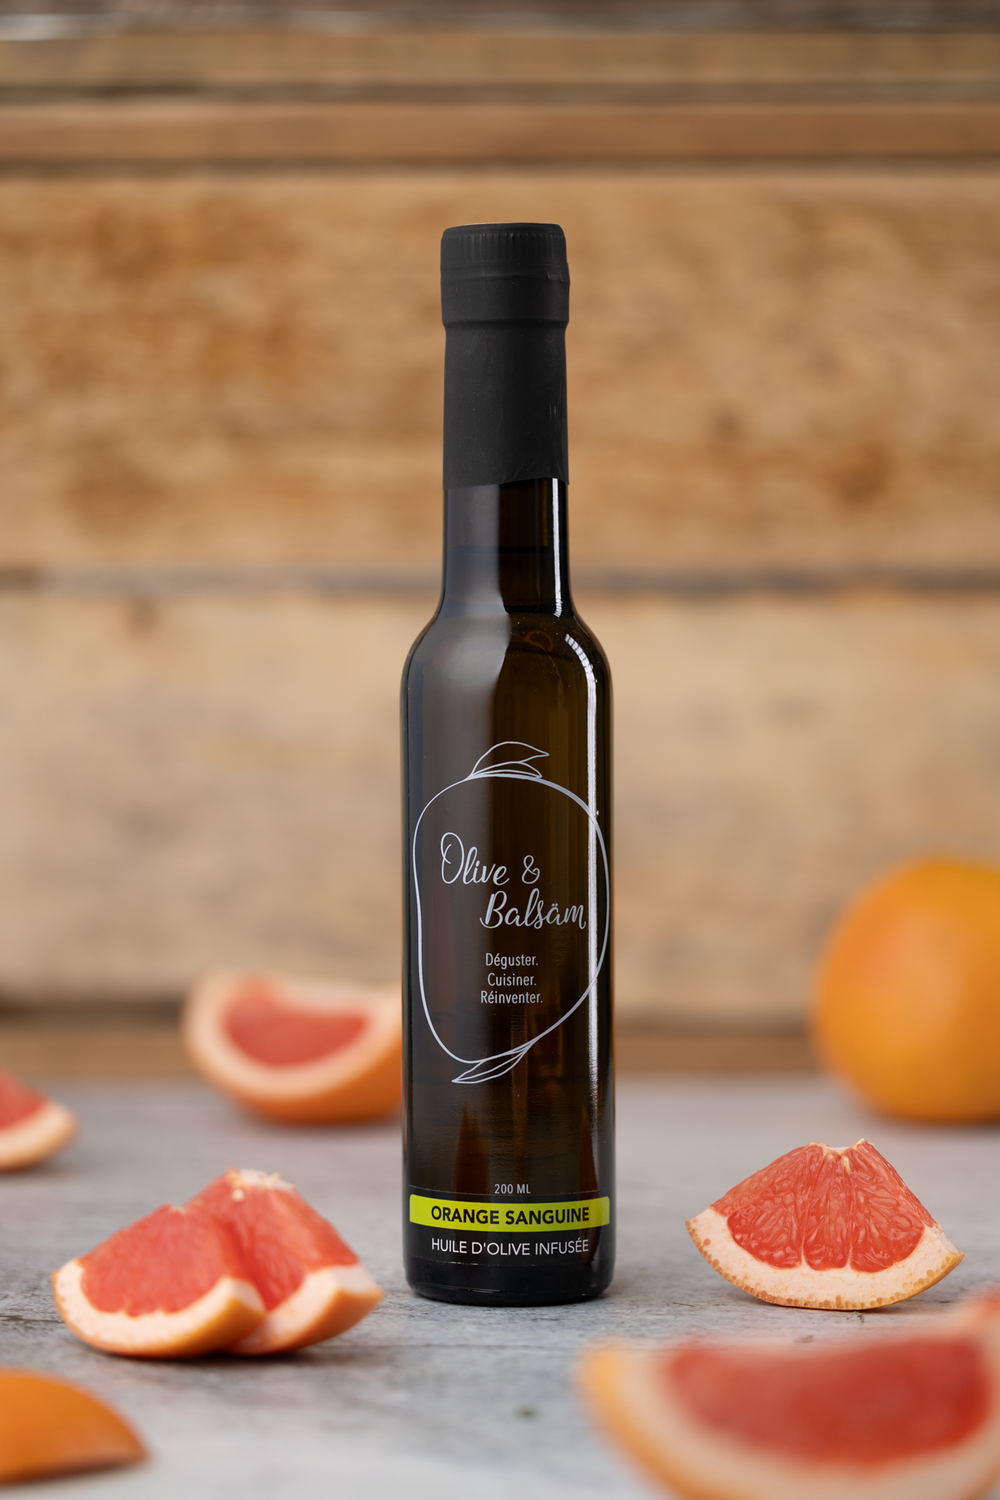 Olive & Balsäm - Huile d'olive infusée Orange Sanguine